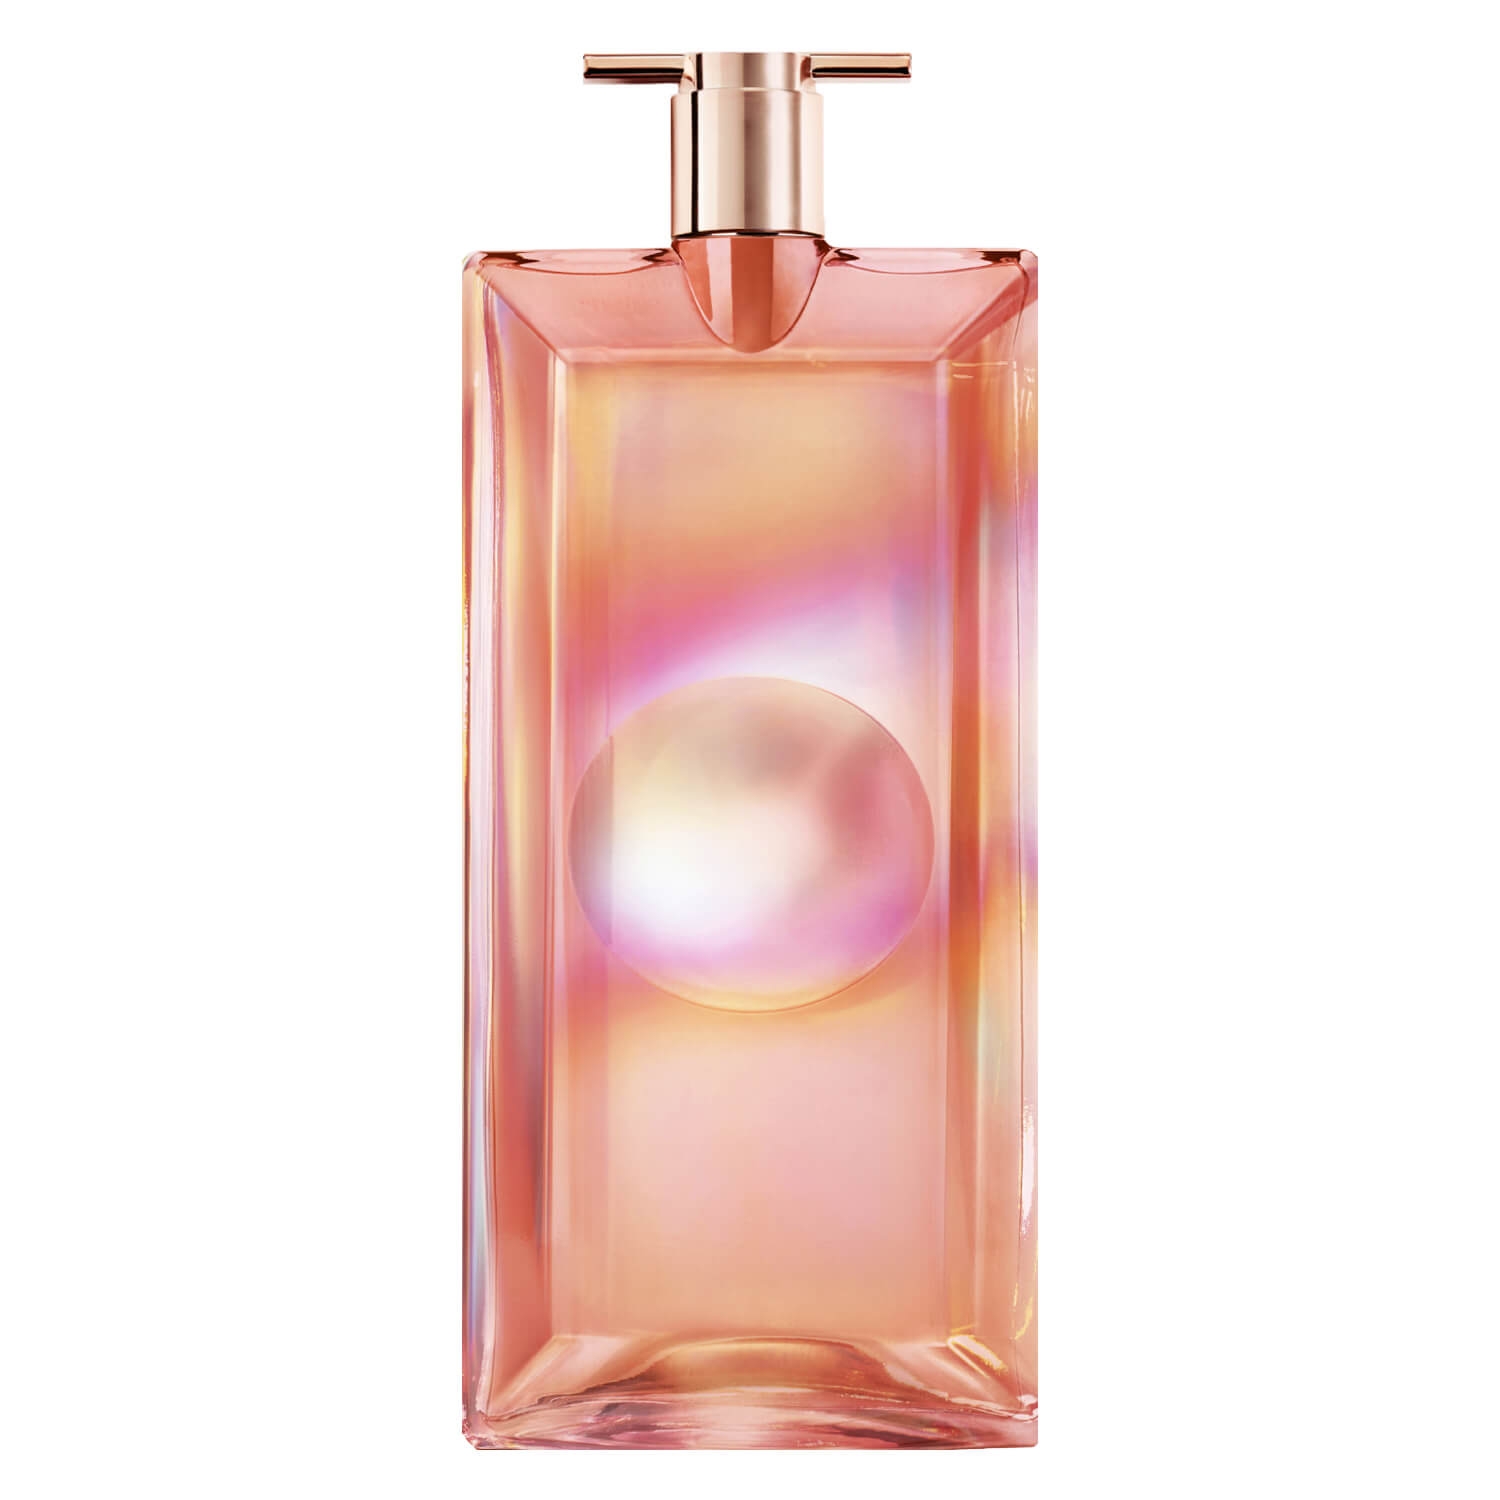 Produktbild von Idôle Nectar Eau de Parfum